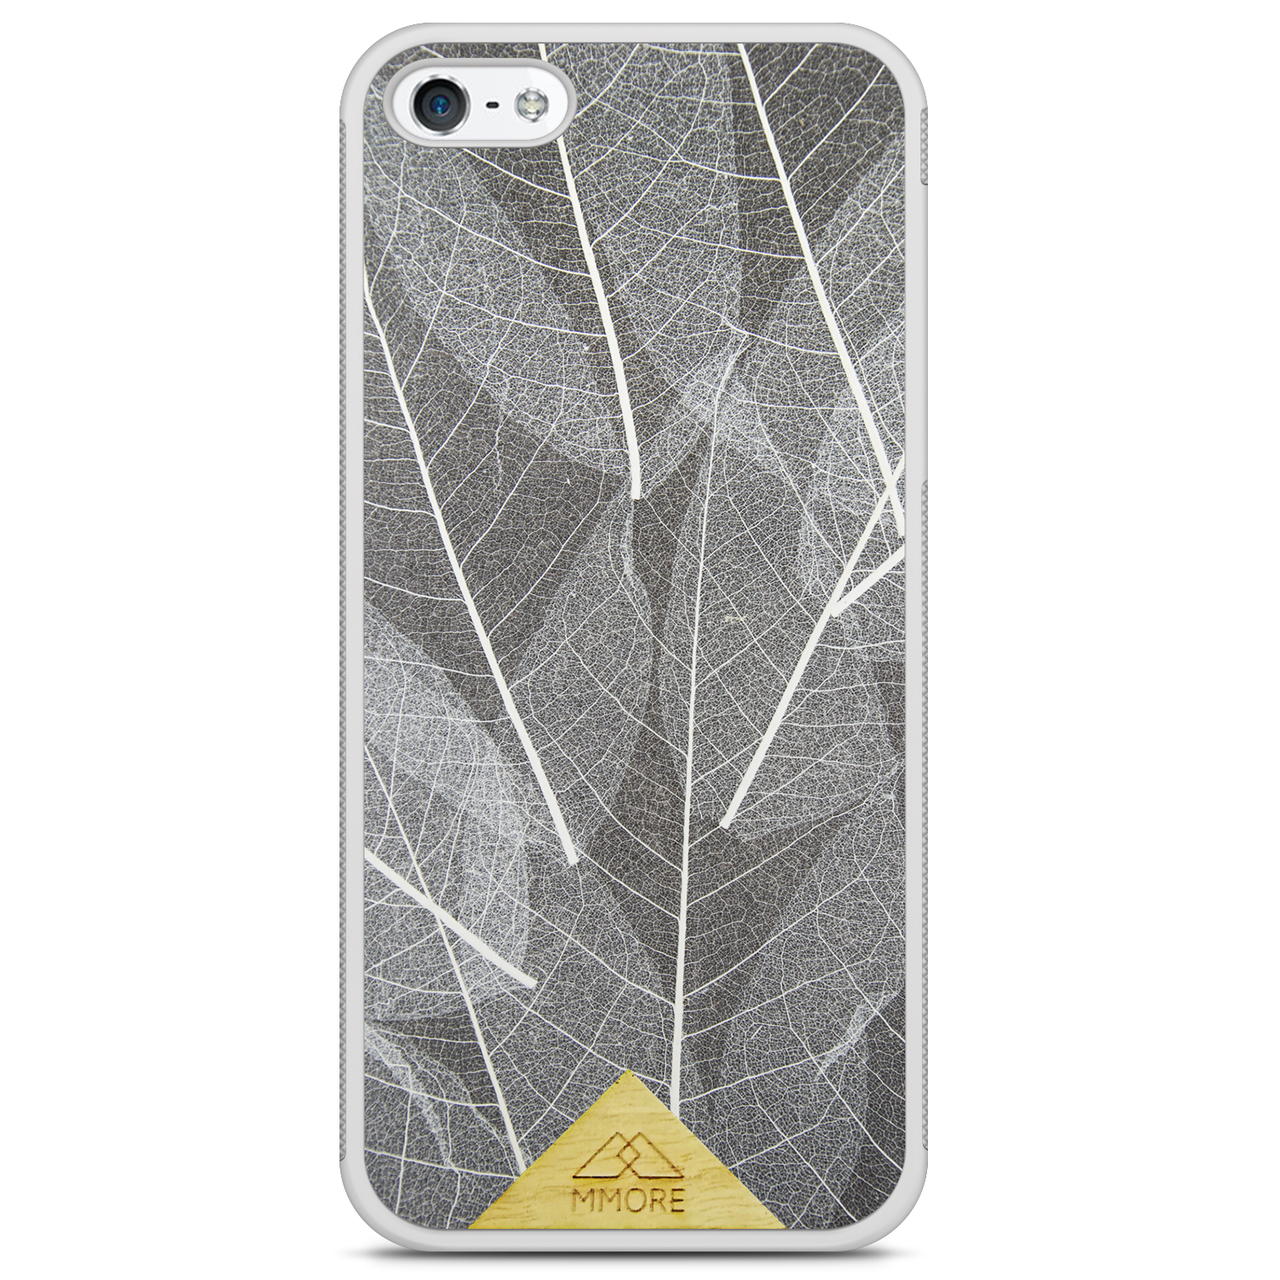 Funda para iPhone 5 con marco blanco y hojas de esqueleto